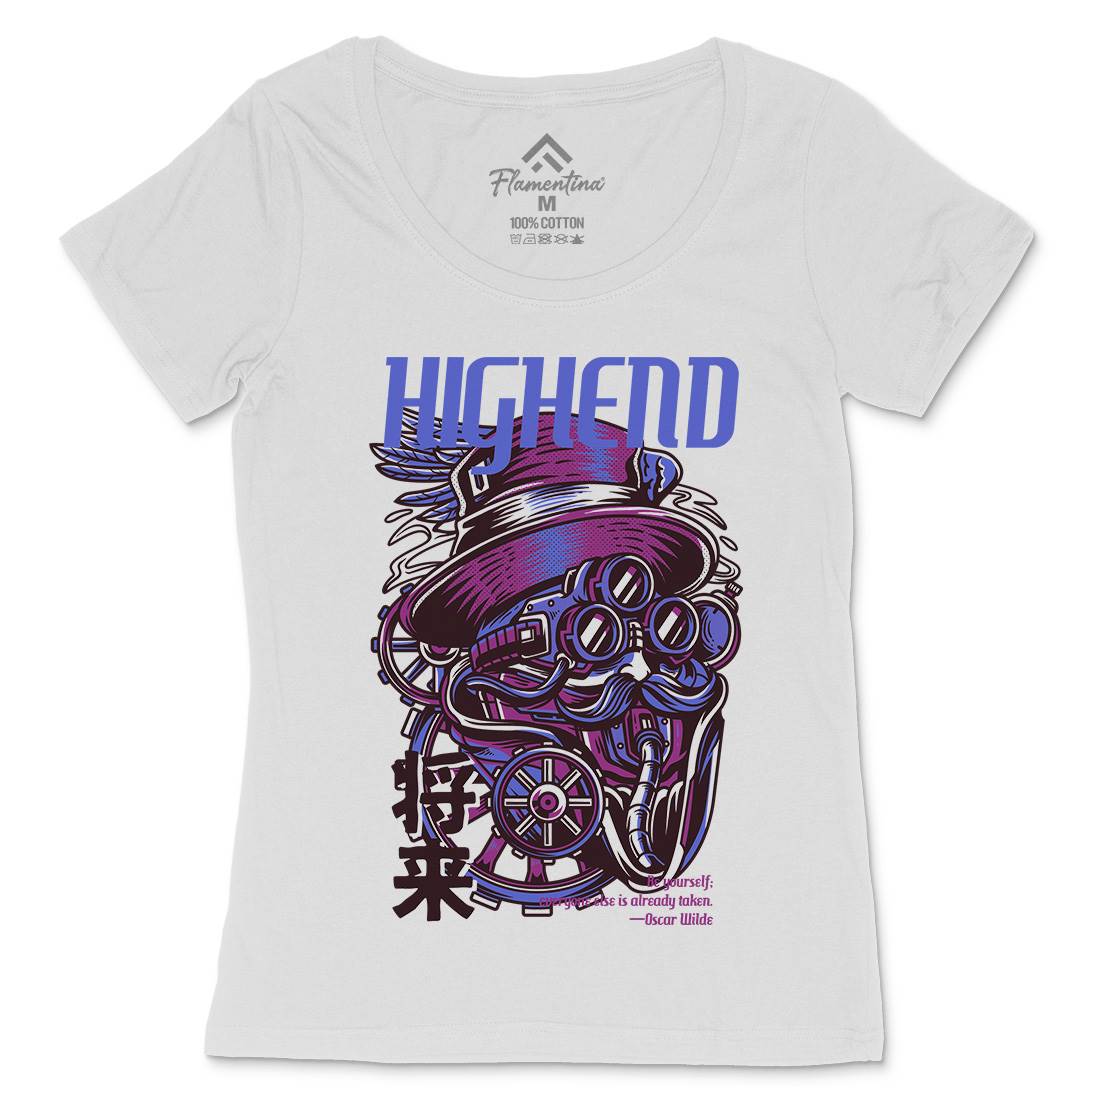 High End Womens Scoop Neck T-Shirt Steampunk D610